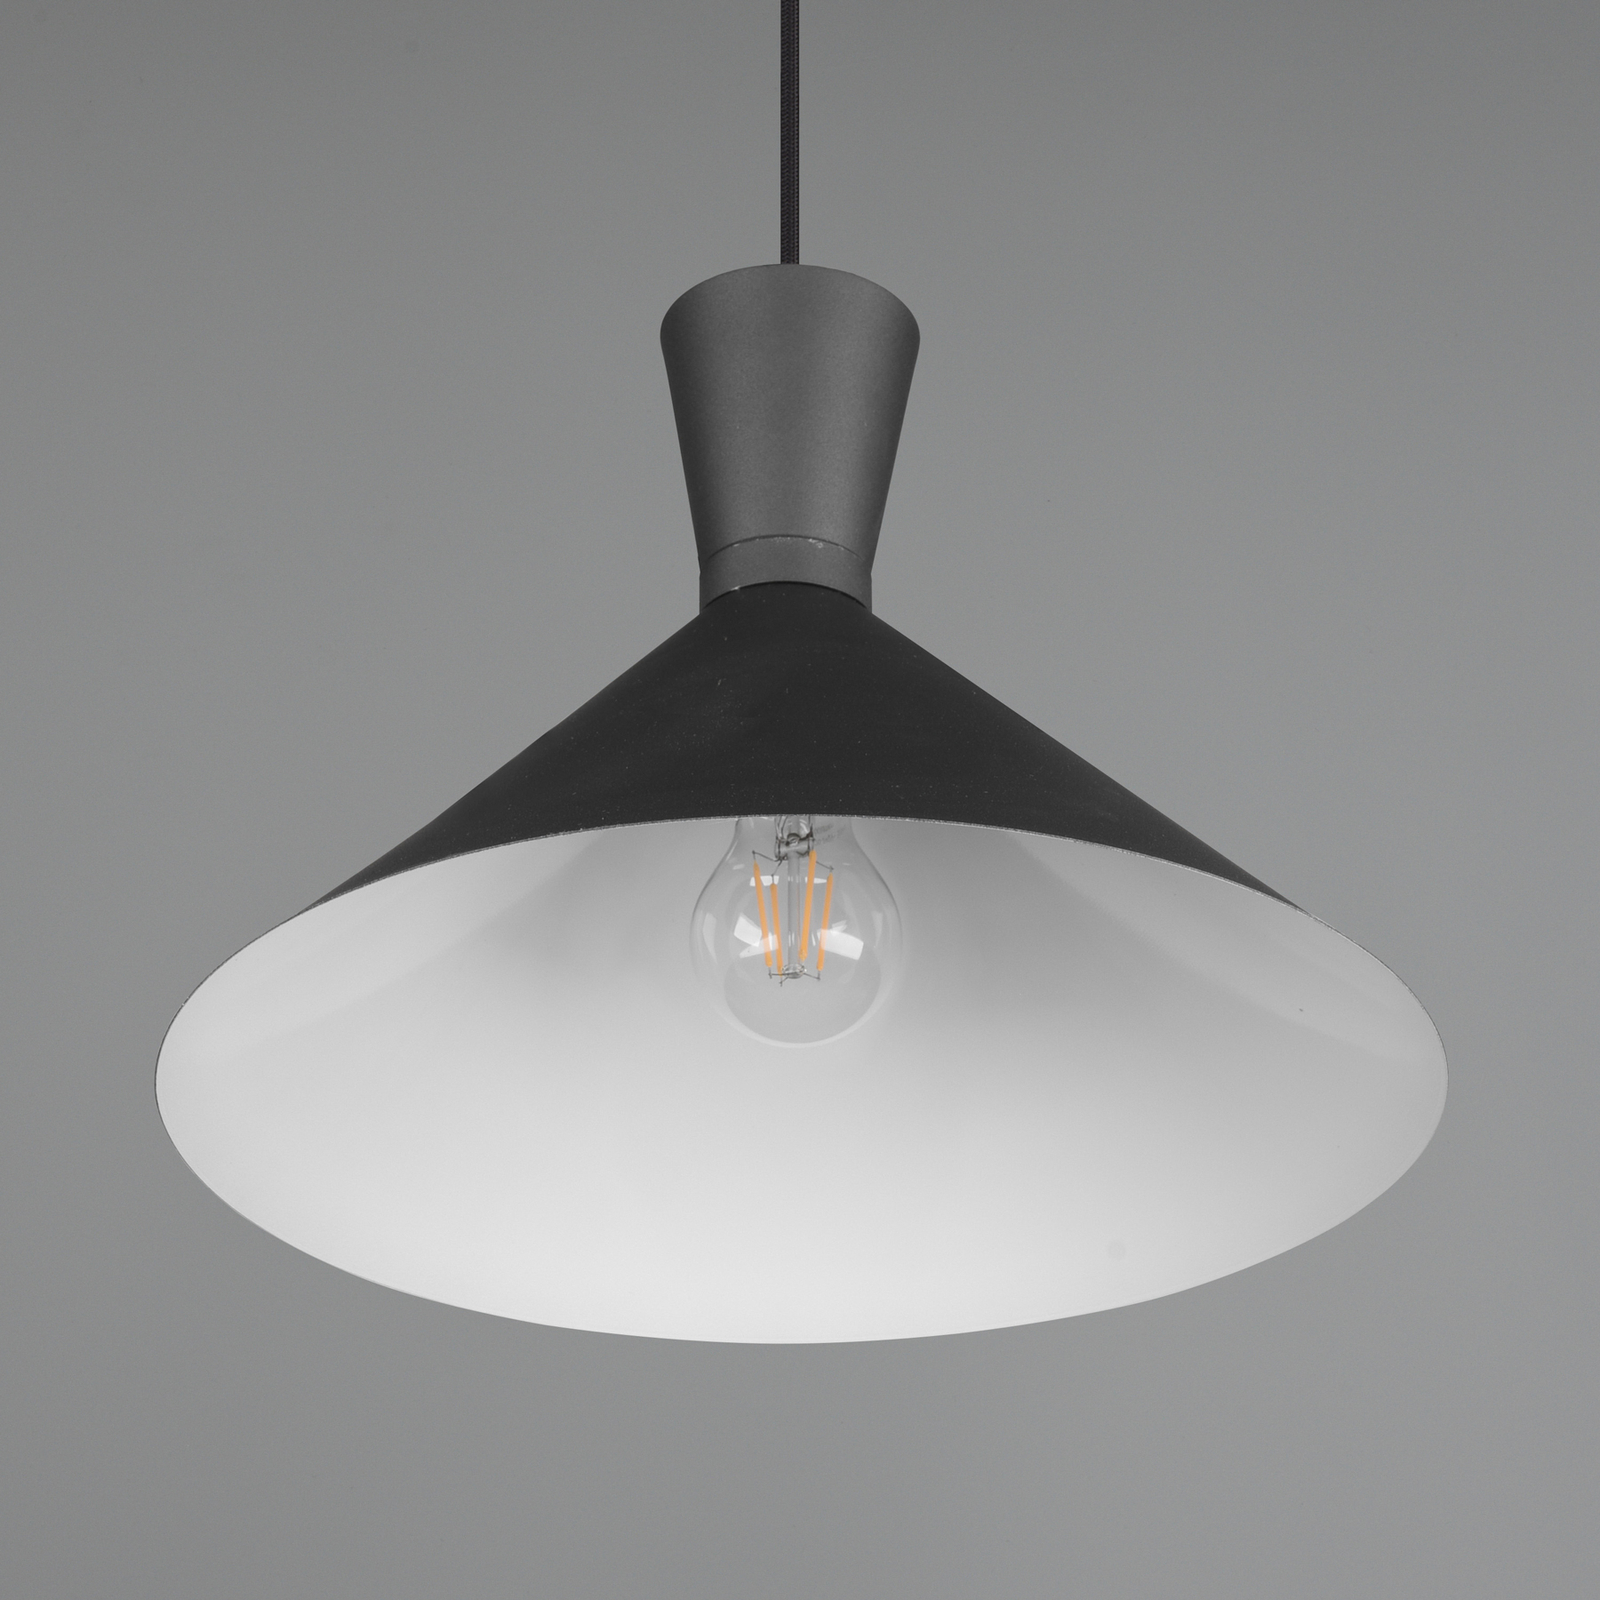 Enzo hængelampe, Ø 35 cm, sort, 1 lyskilde